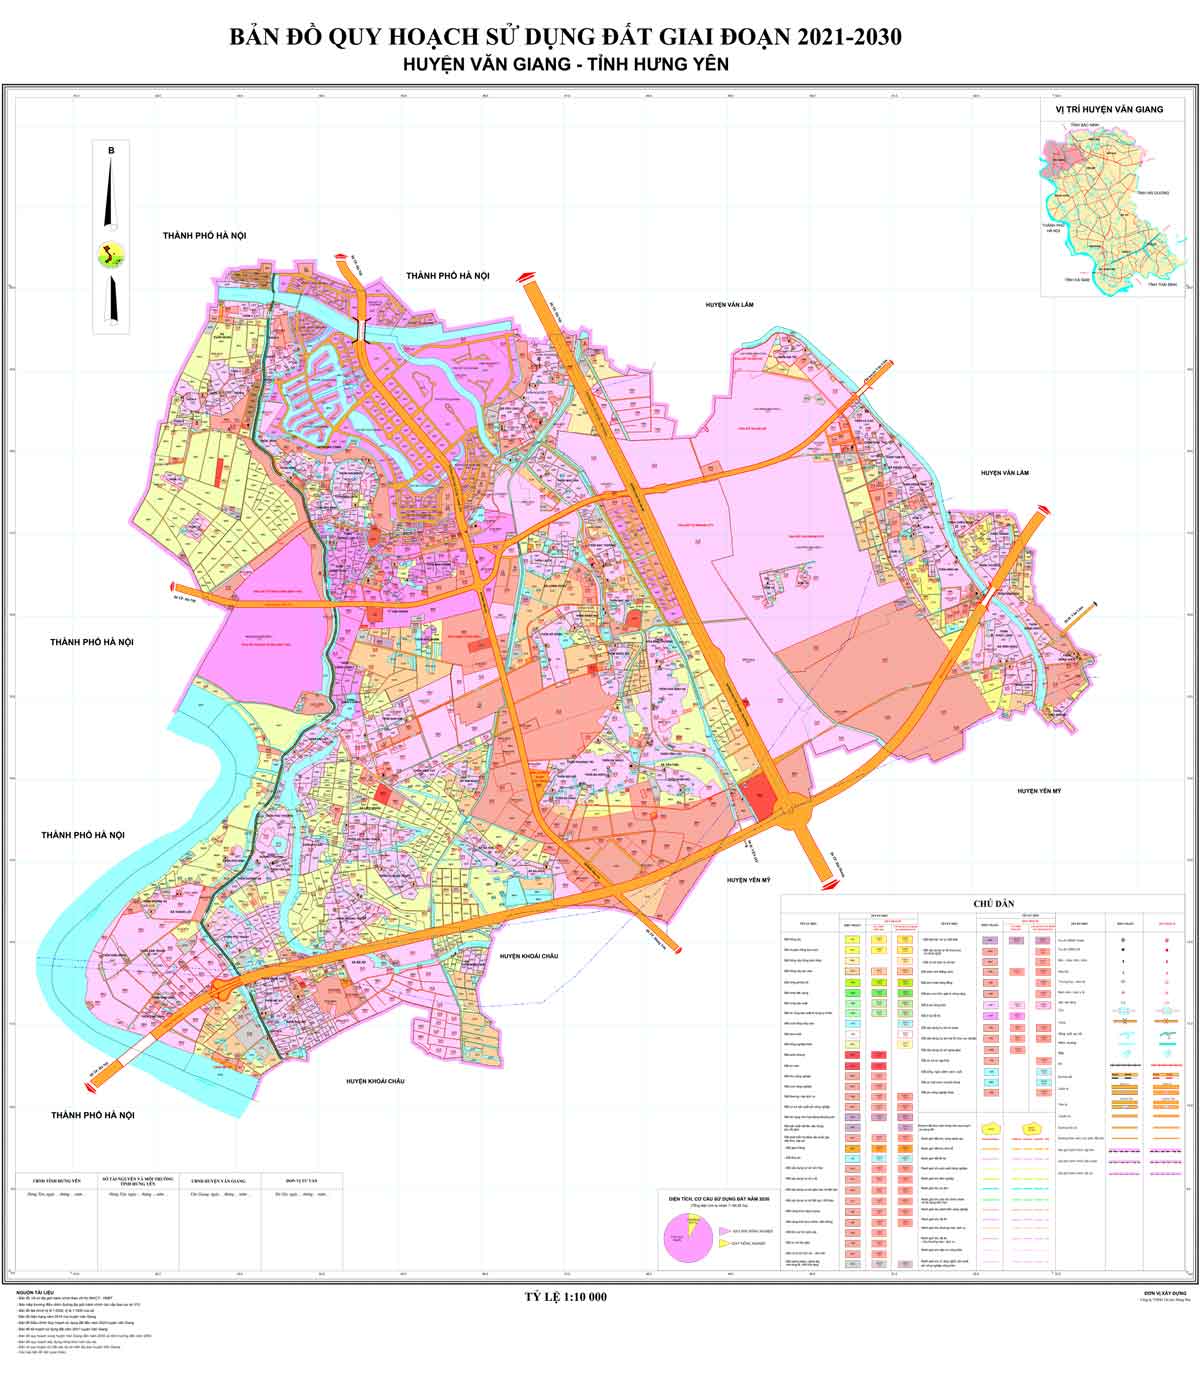 Bản đồ QHSDĐ huyện Văn Giang đến năm 2030